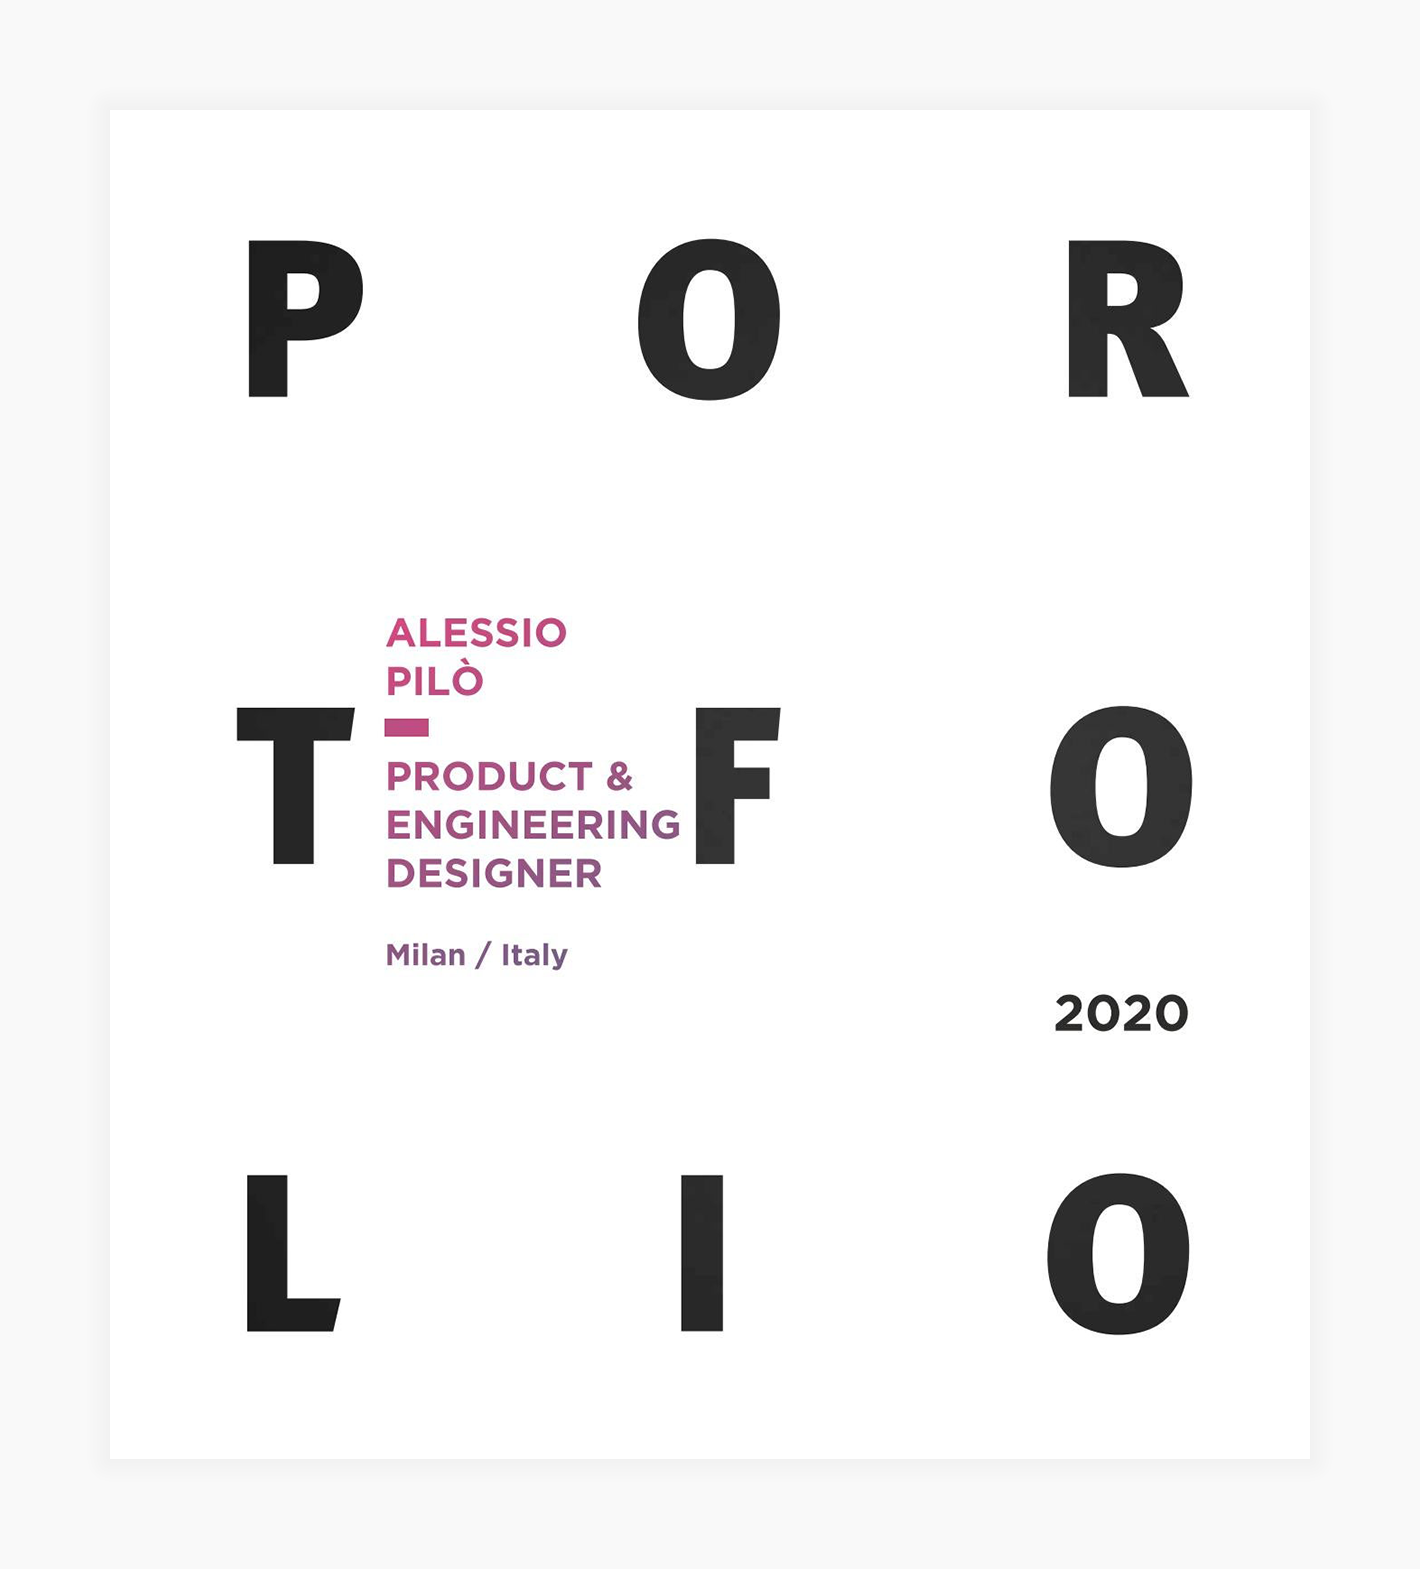 Screenshot of a product design engineer portfolio cover